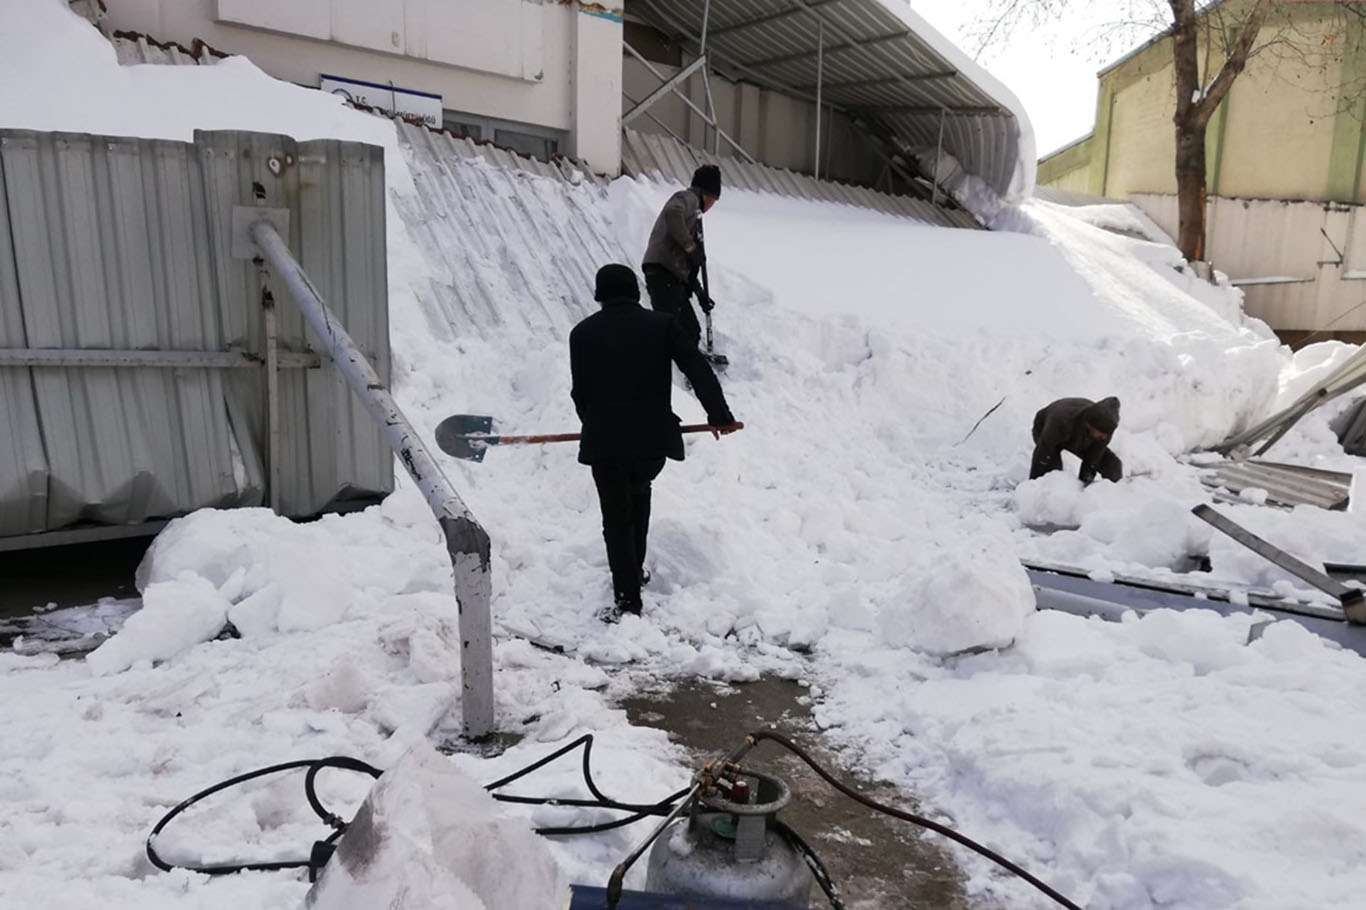 Gaziantep’te biriken kar nedeniyle caminin ön kısmındaki çatı çöktü